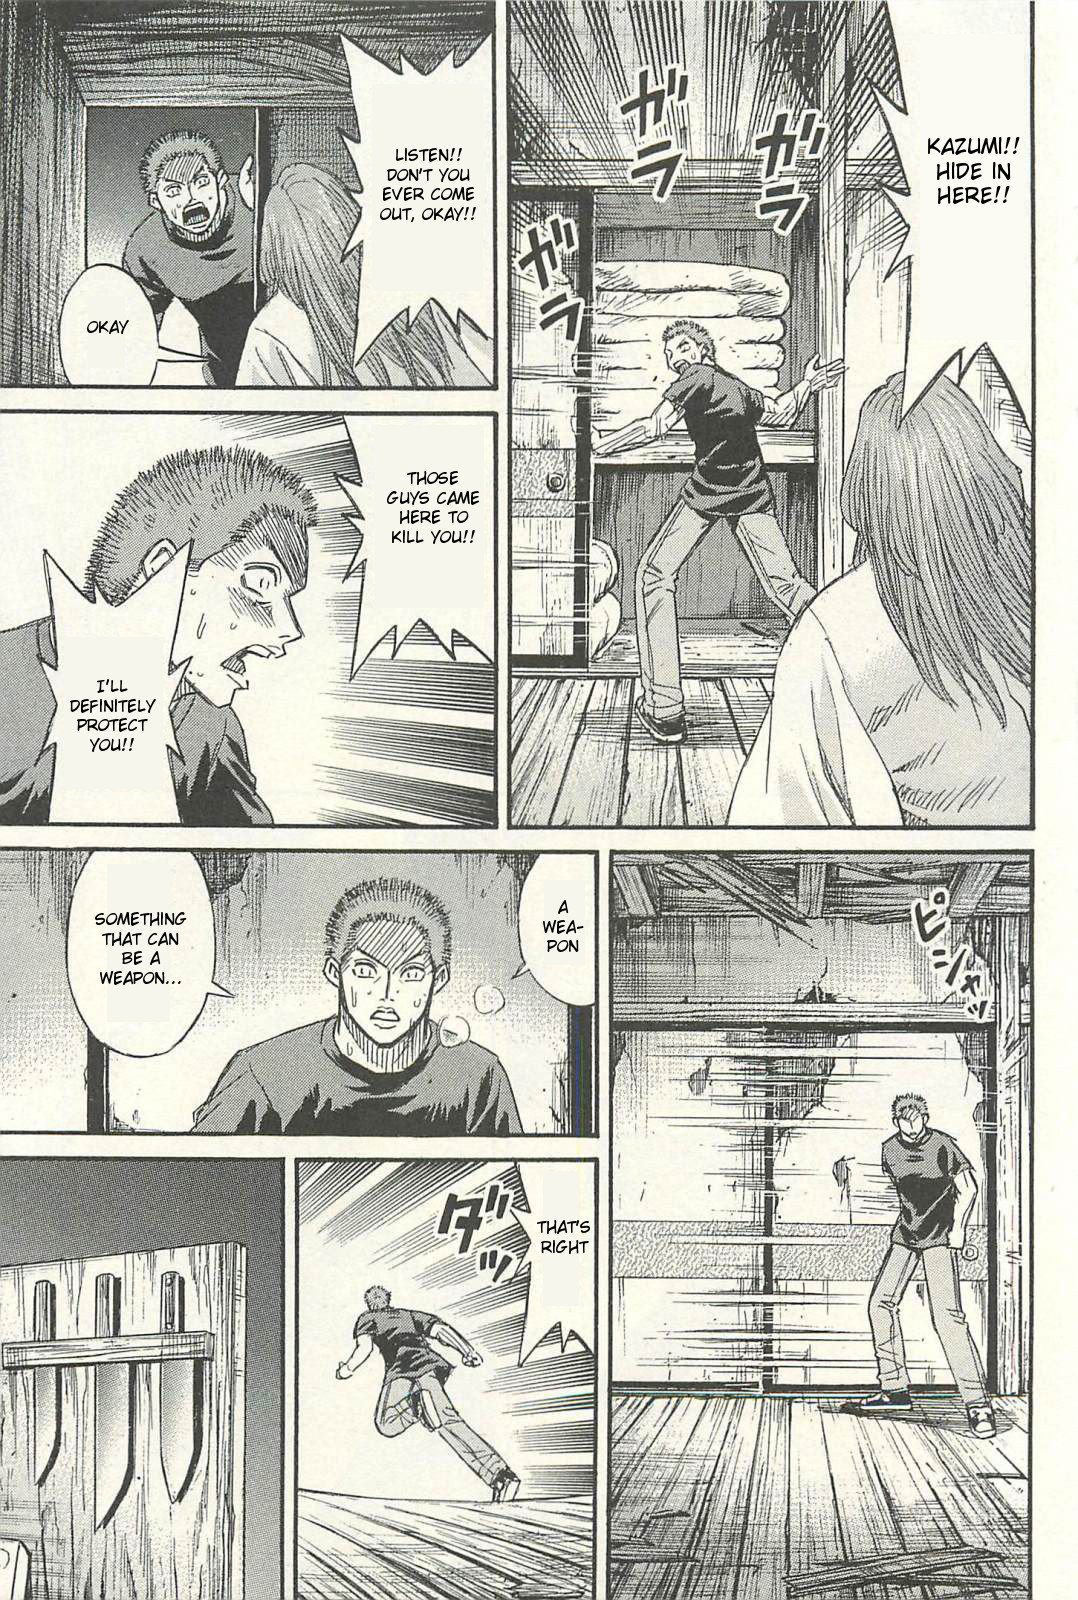 Higanjima Saigo no 47 Hiai Vol. 2 Ch. 18 Surprise Attack